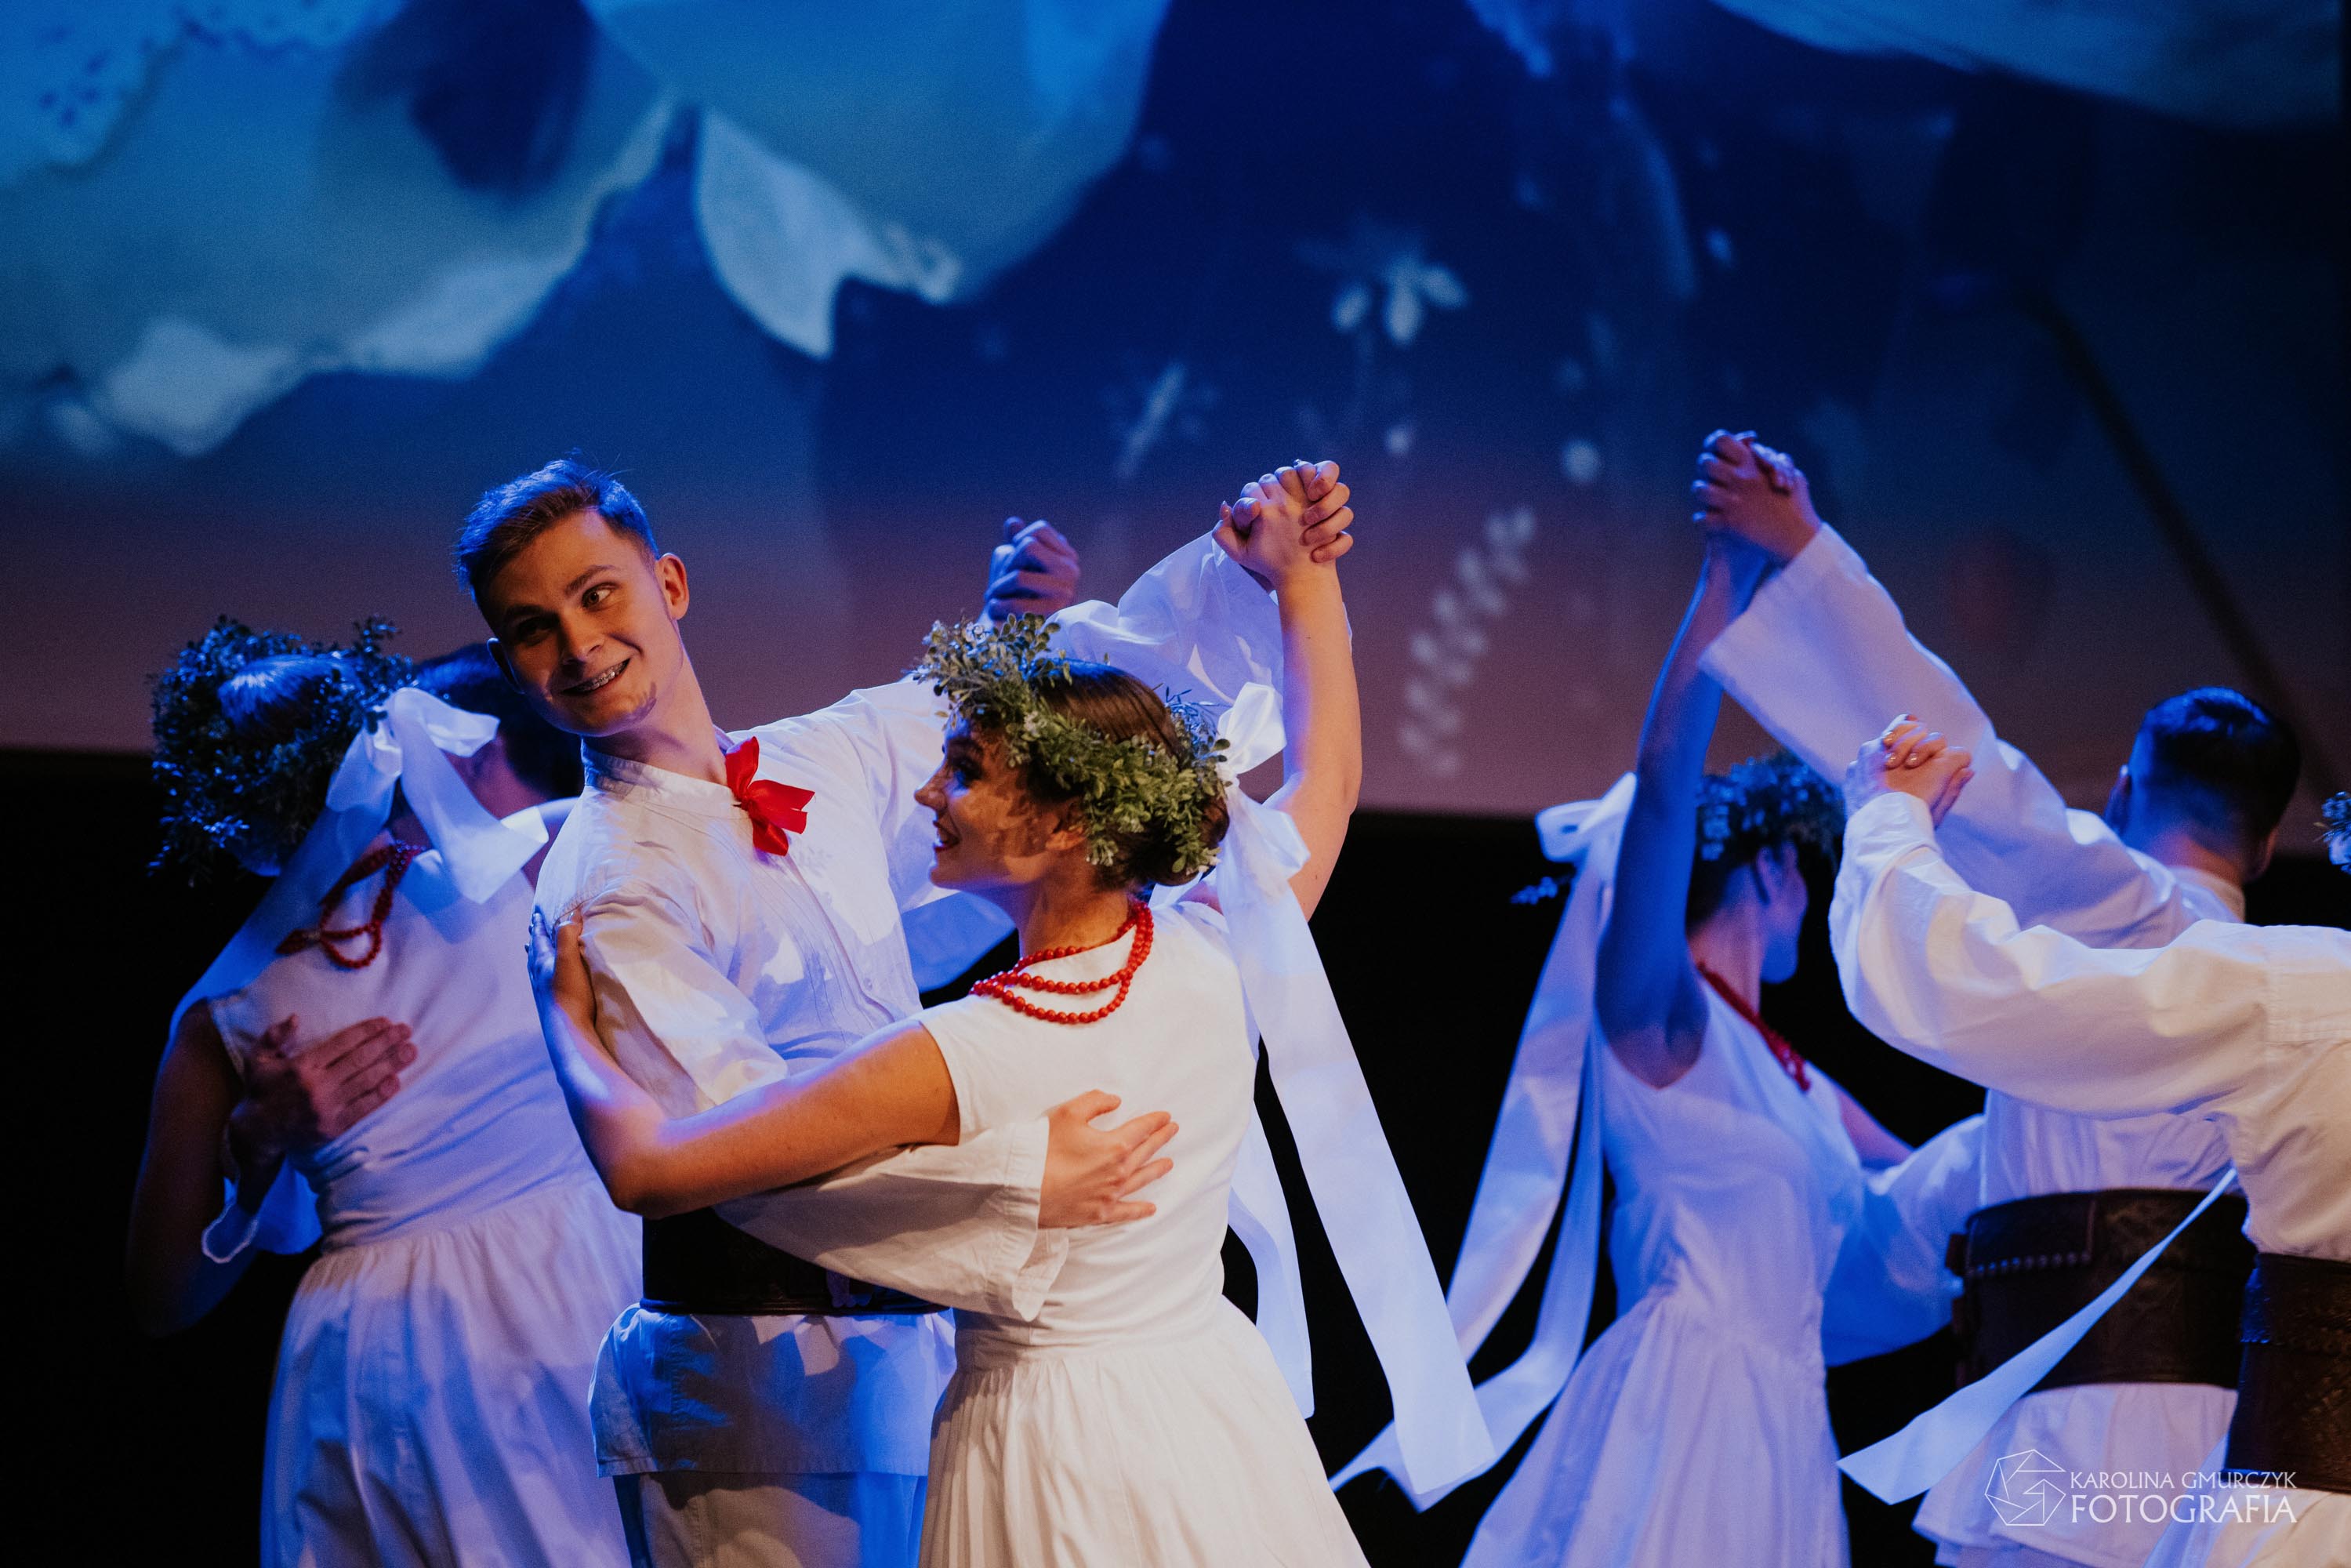 Na scenie Sokołowskiego Ośrodka Kultury widać wirujące w tańcu pary ubrane w tradycyjne regionalne stroje ludowe w kolorze białym. Tancerki ubrane w białe sukienki z czerwonymi akcentami i zielonym wiankiem na głowie. Tancerze ubrani w długie białe spodnie i białe kaftany z czerwoną wstążką pod szyją, przepasani przez biodra skórzanymi pasami.